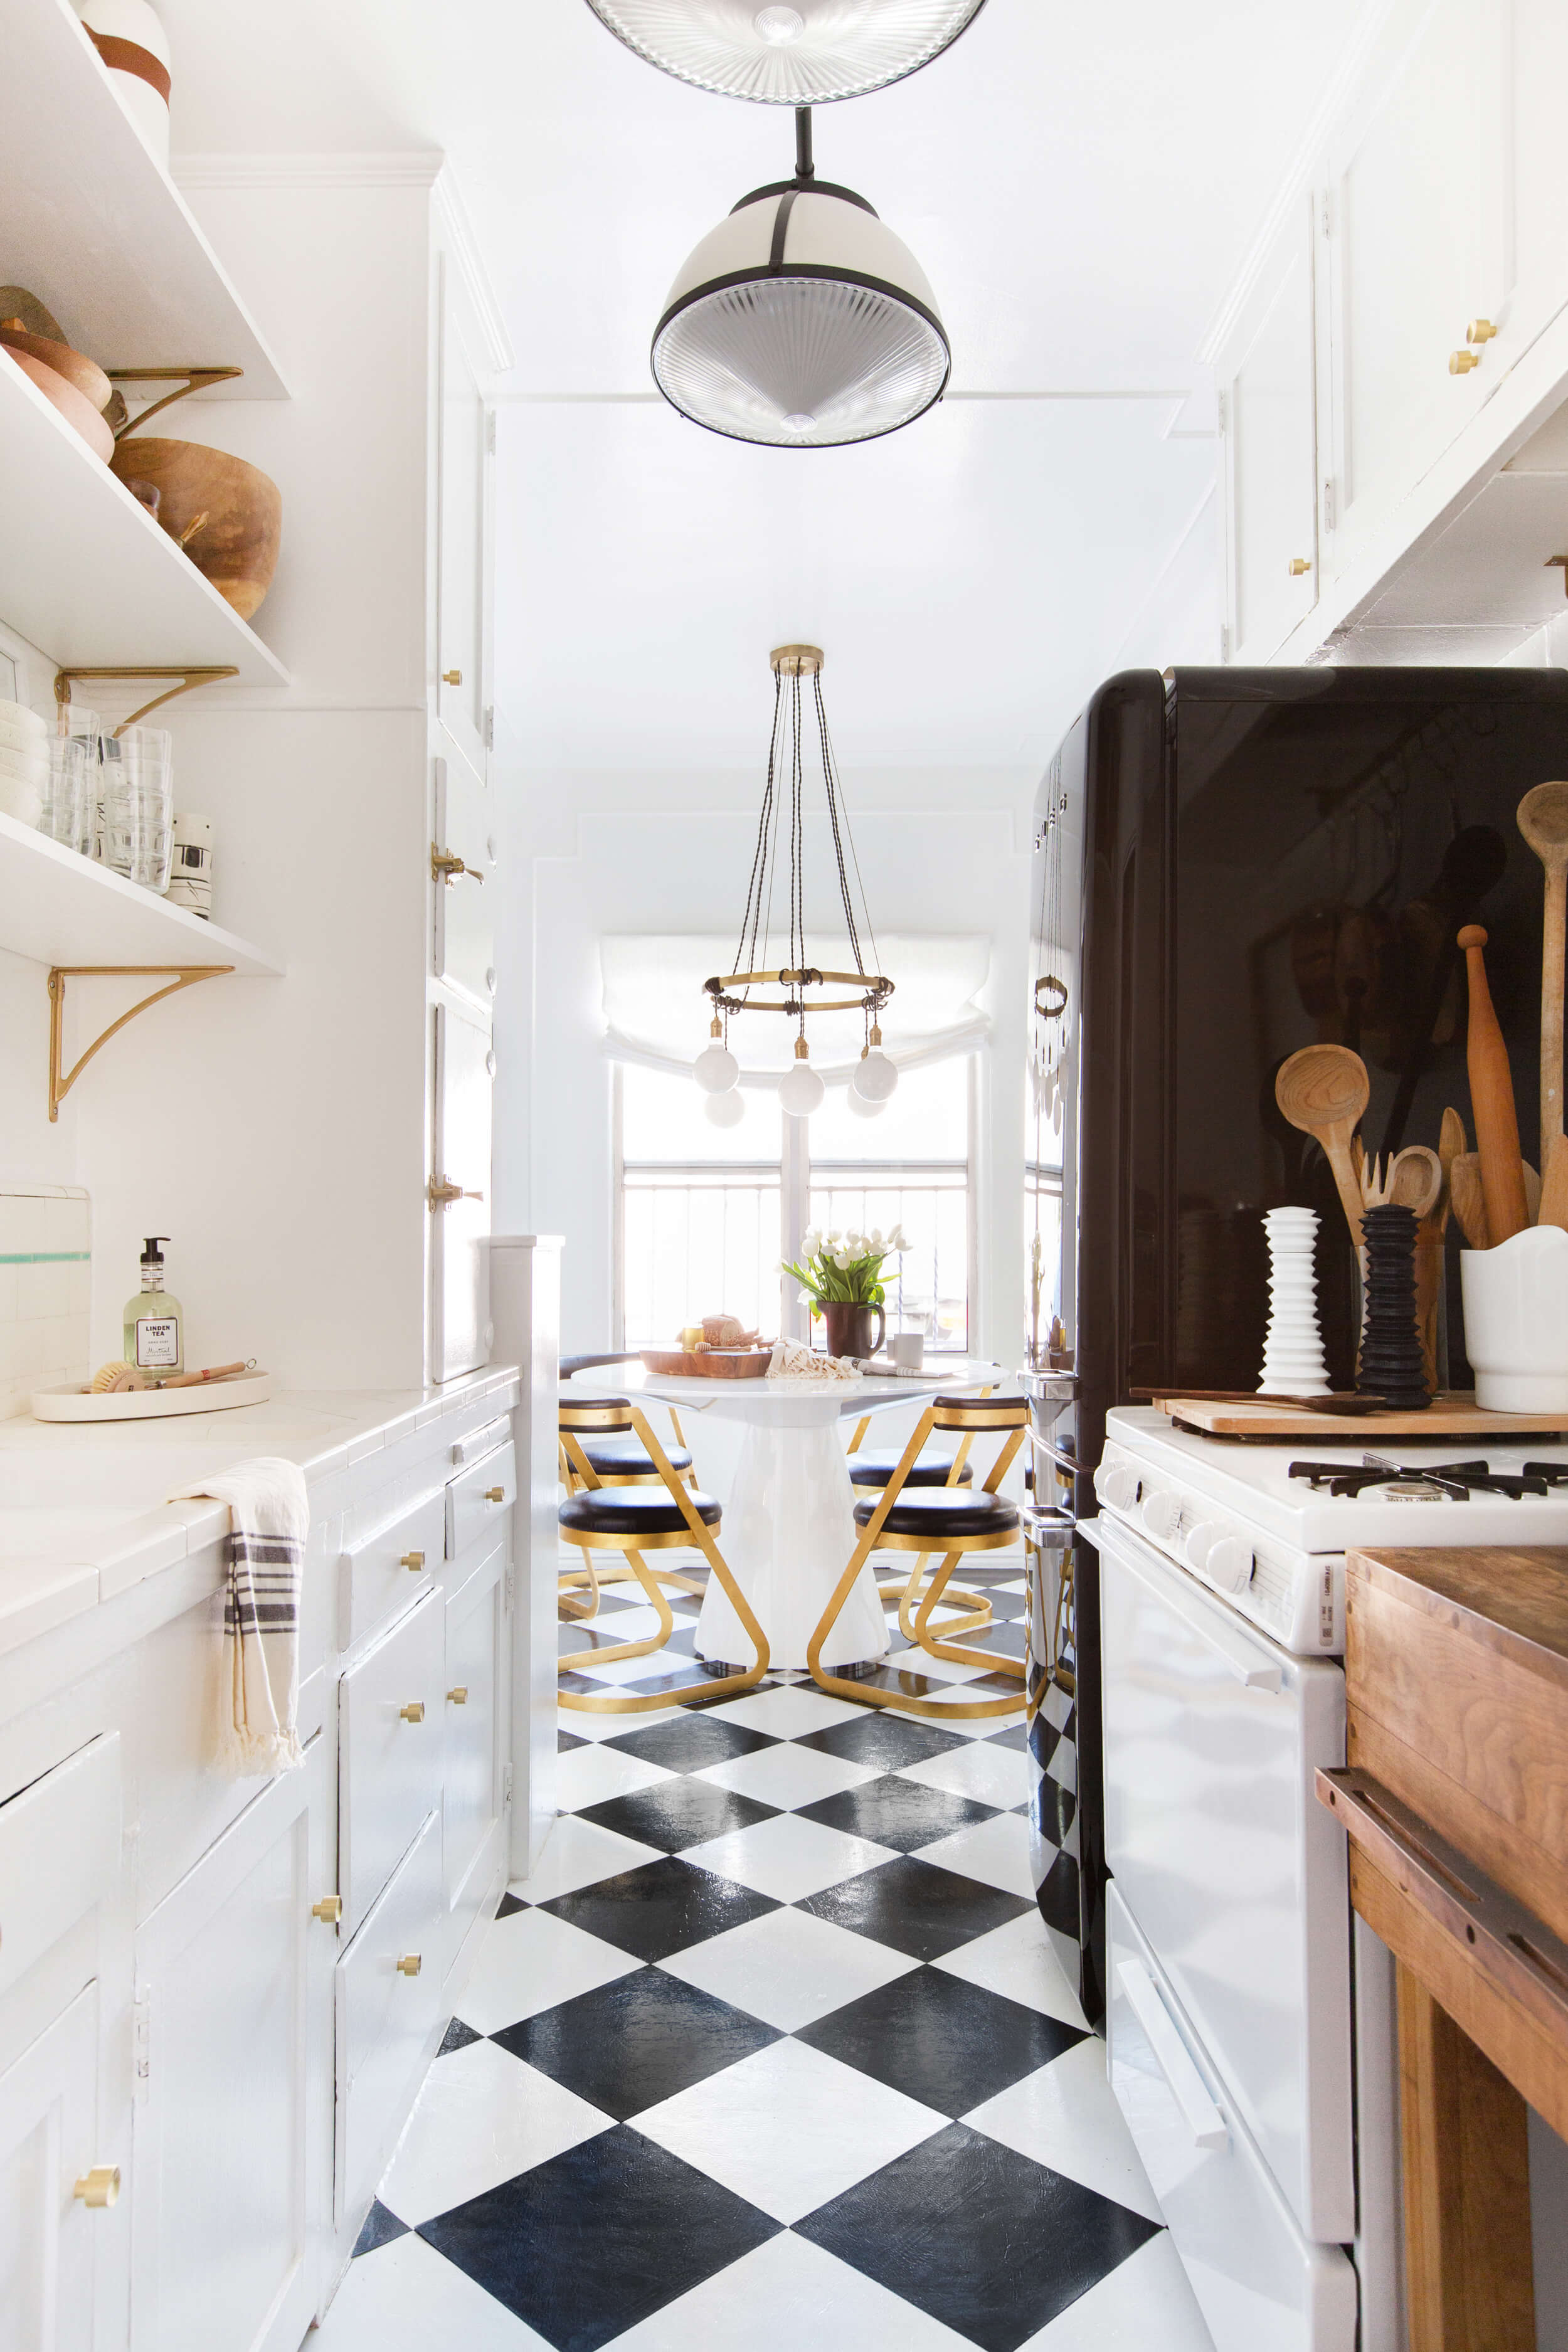 Checkerboard Kitchen Floor Ideas, Retro Tile Trend   domino